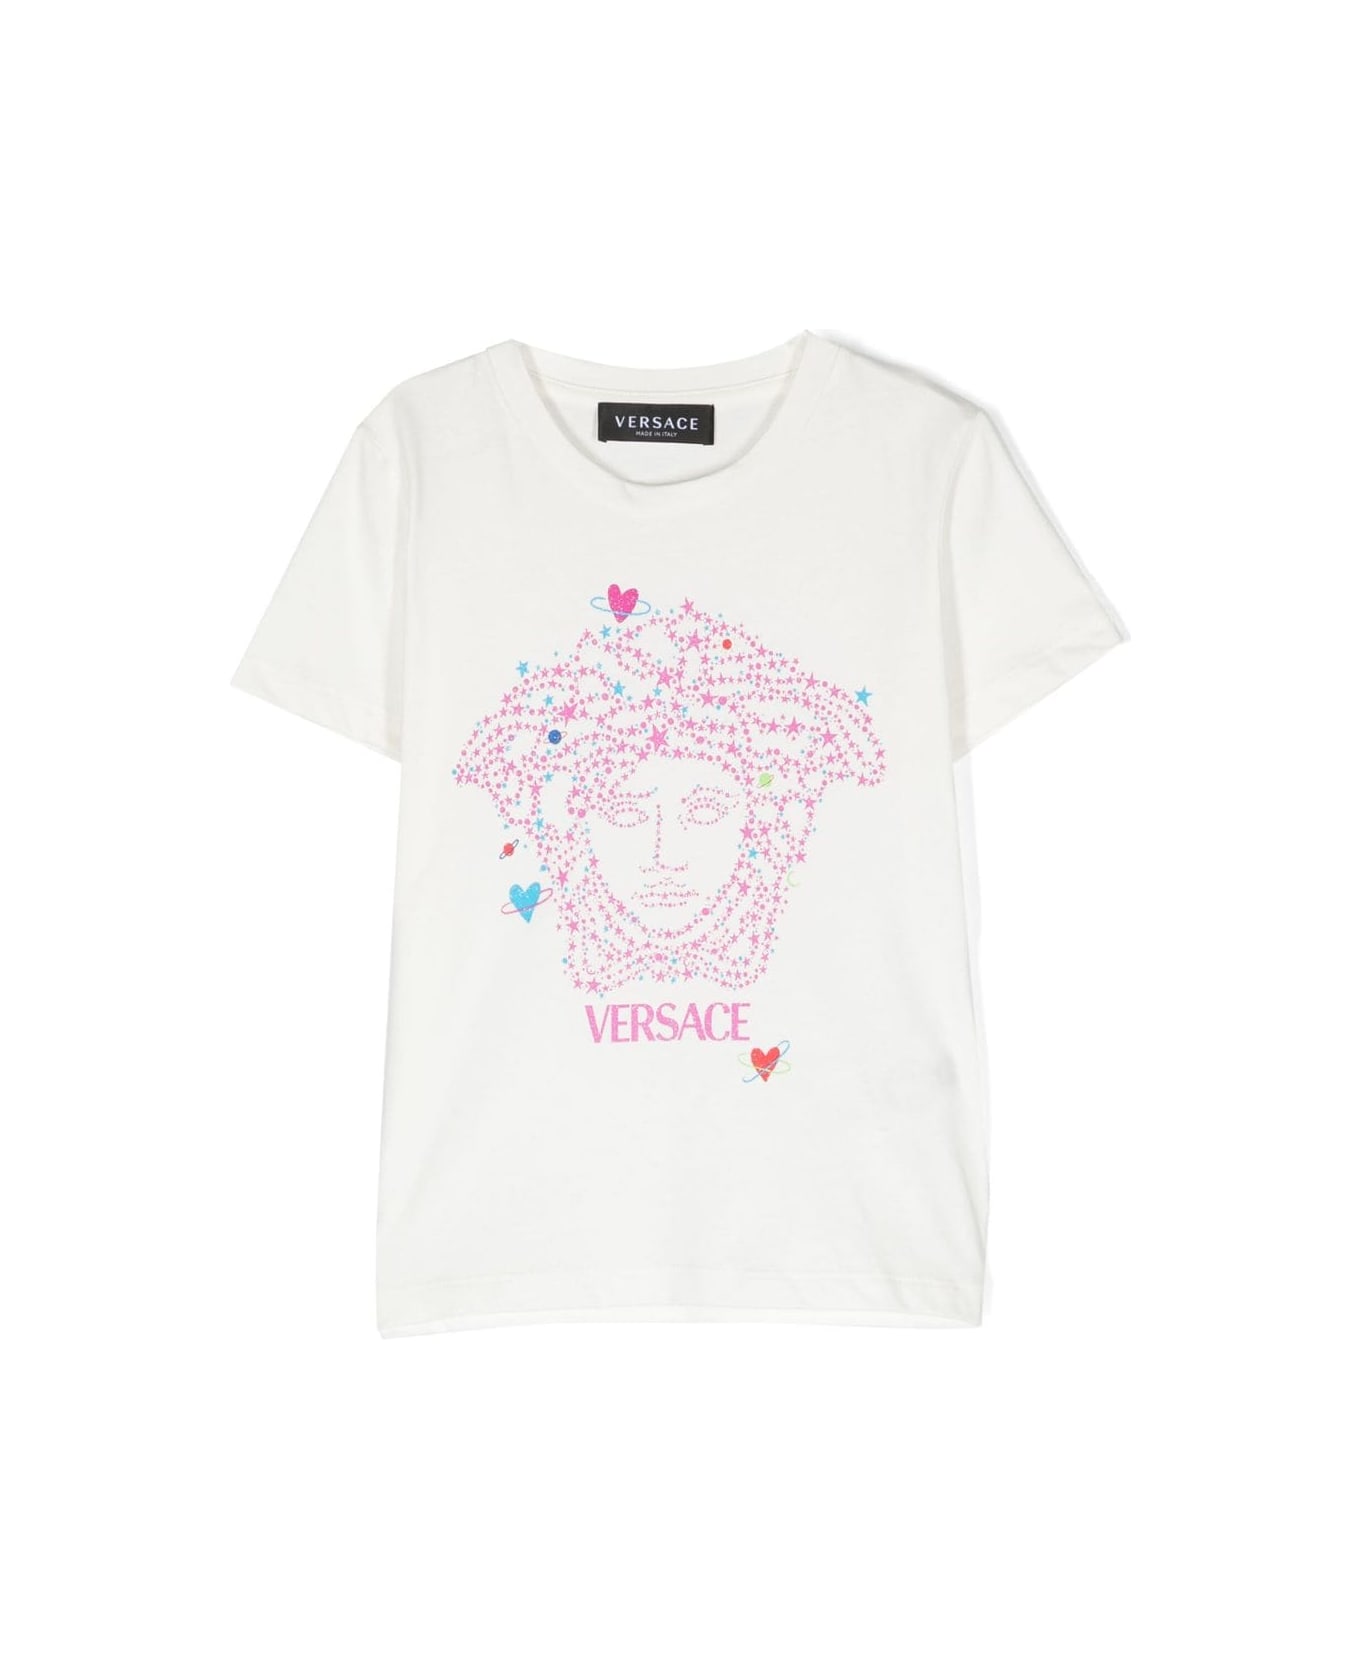 Versace T-shirt Bianca In Jersey Di Cotone Bambina - Bianco